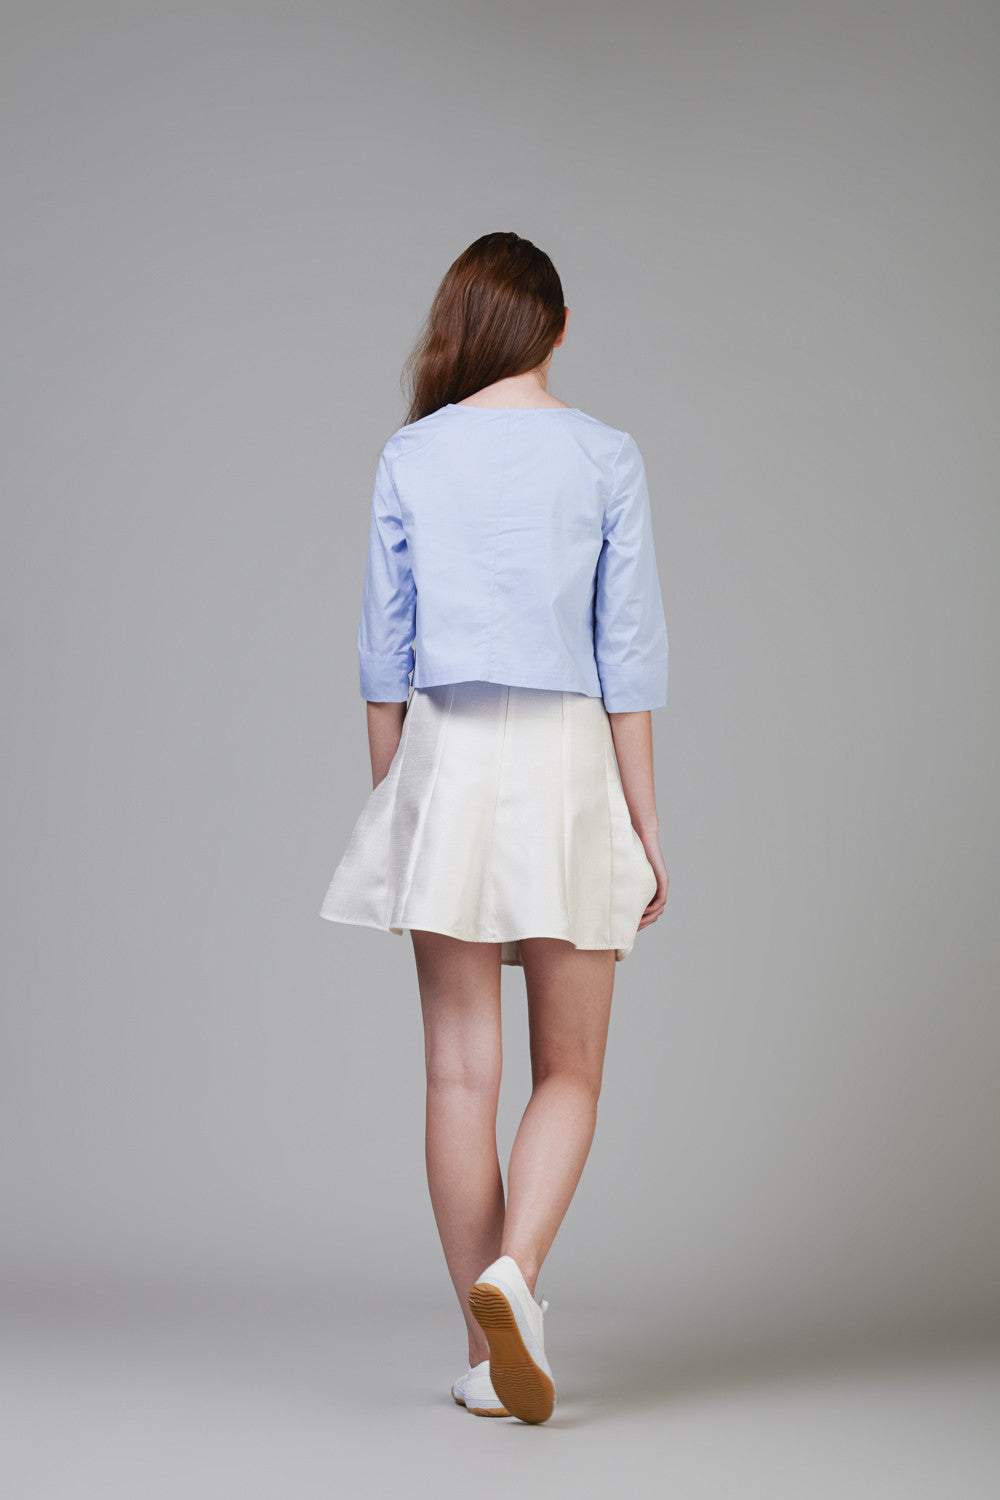 Gored Skirt #4A